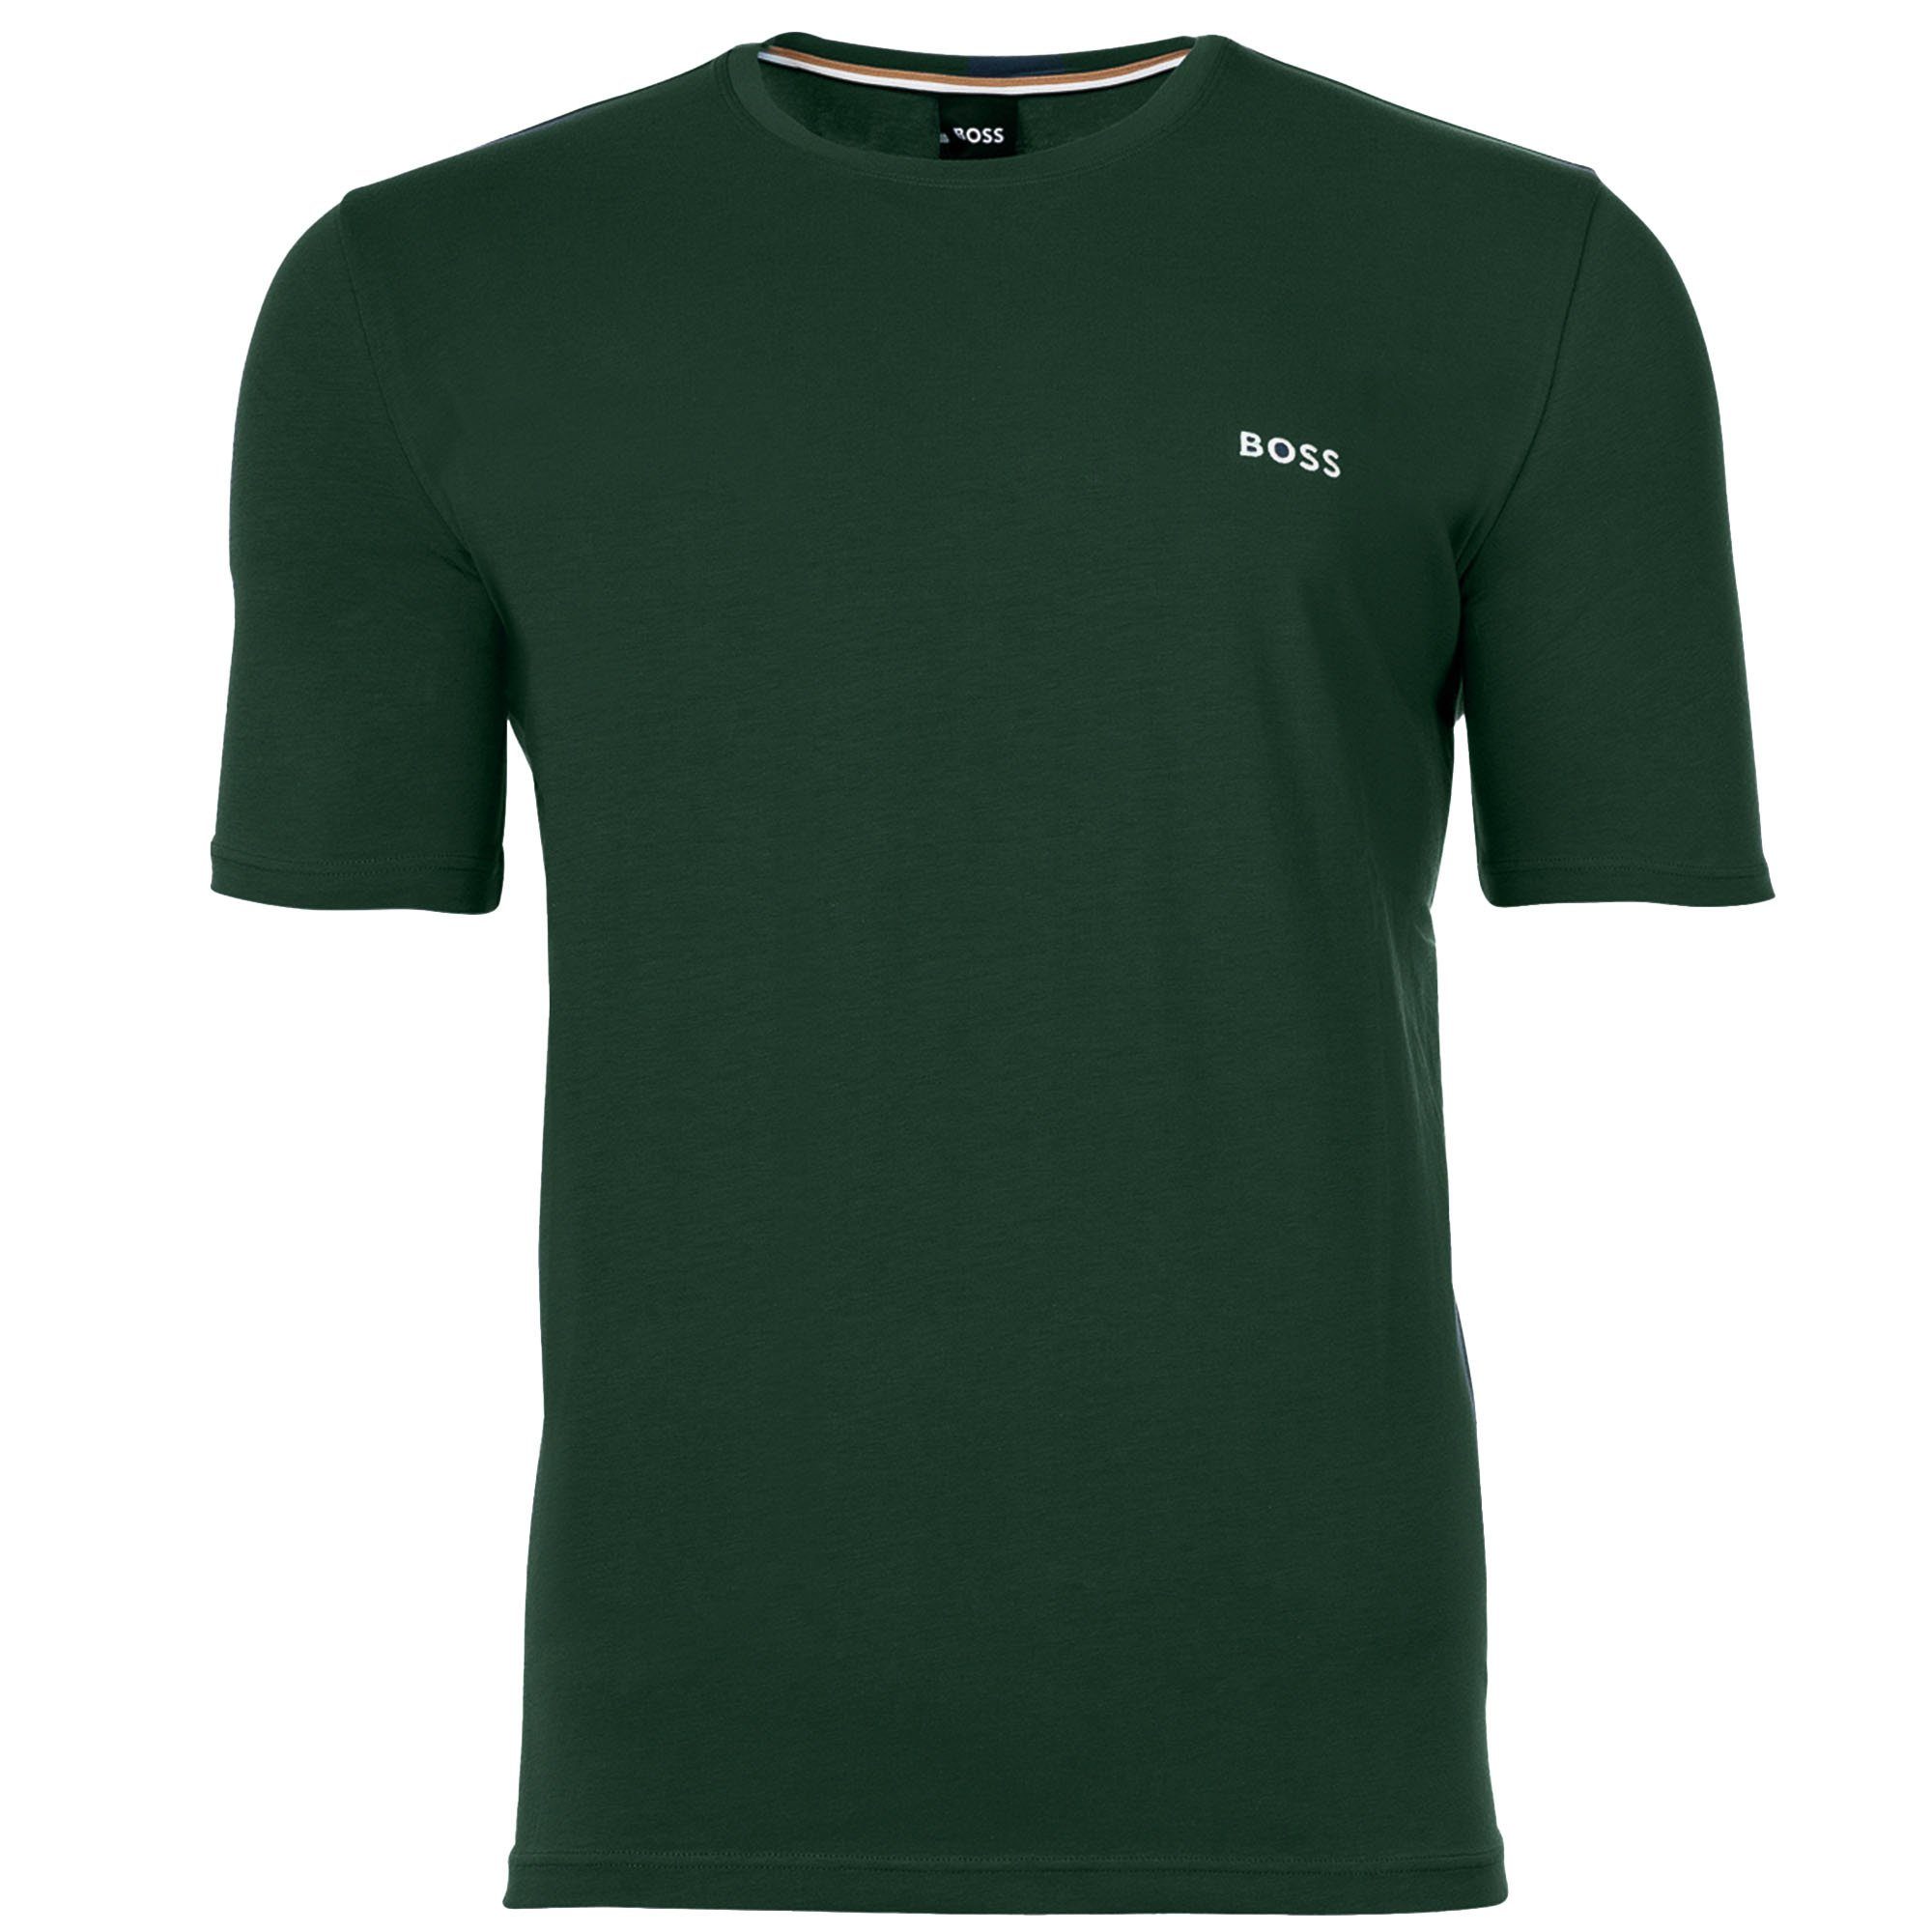 BOSS T-Shirt Herren T-Shirt - Mix & Match, Rundhals, Baumwolle Grün (Open Green)